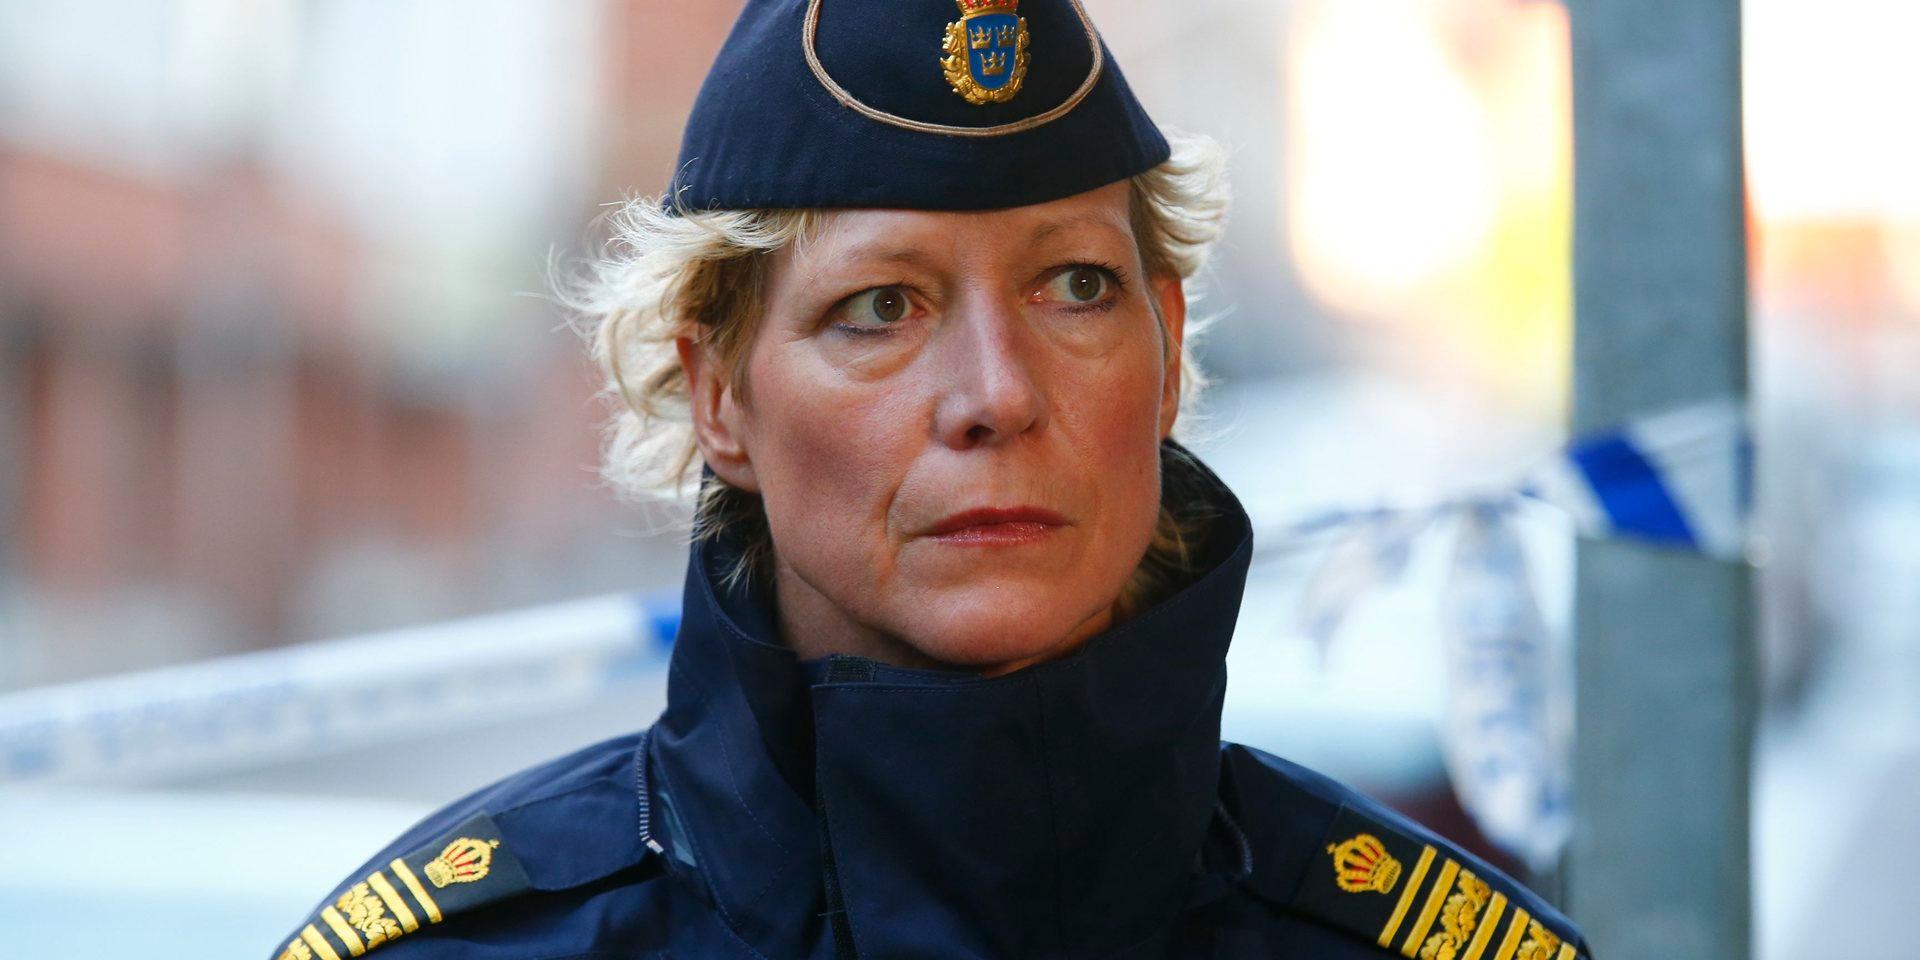 Lena Matthijs, tidigare polismästare och nu lärare vid polisutbildningen i Borås, tycker att vattenkanoner kan vara ett bra extra tillskott till polisen. Användningen av gummikulor är hon dock emot.